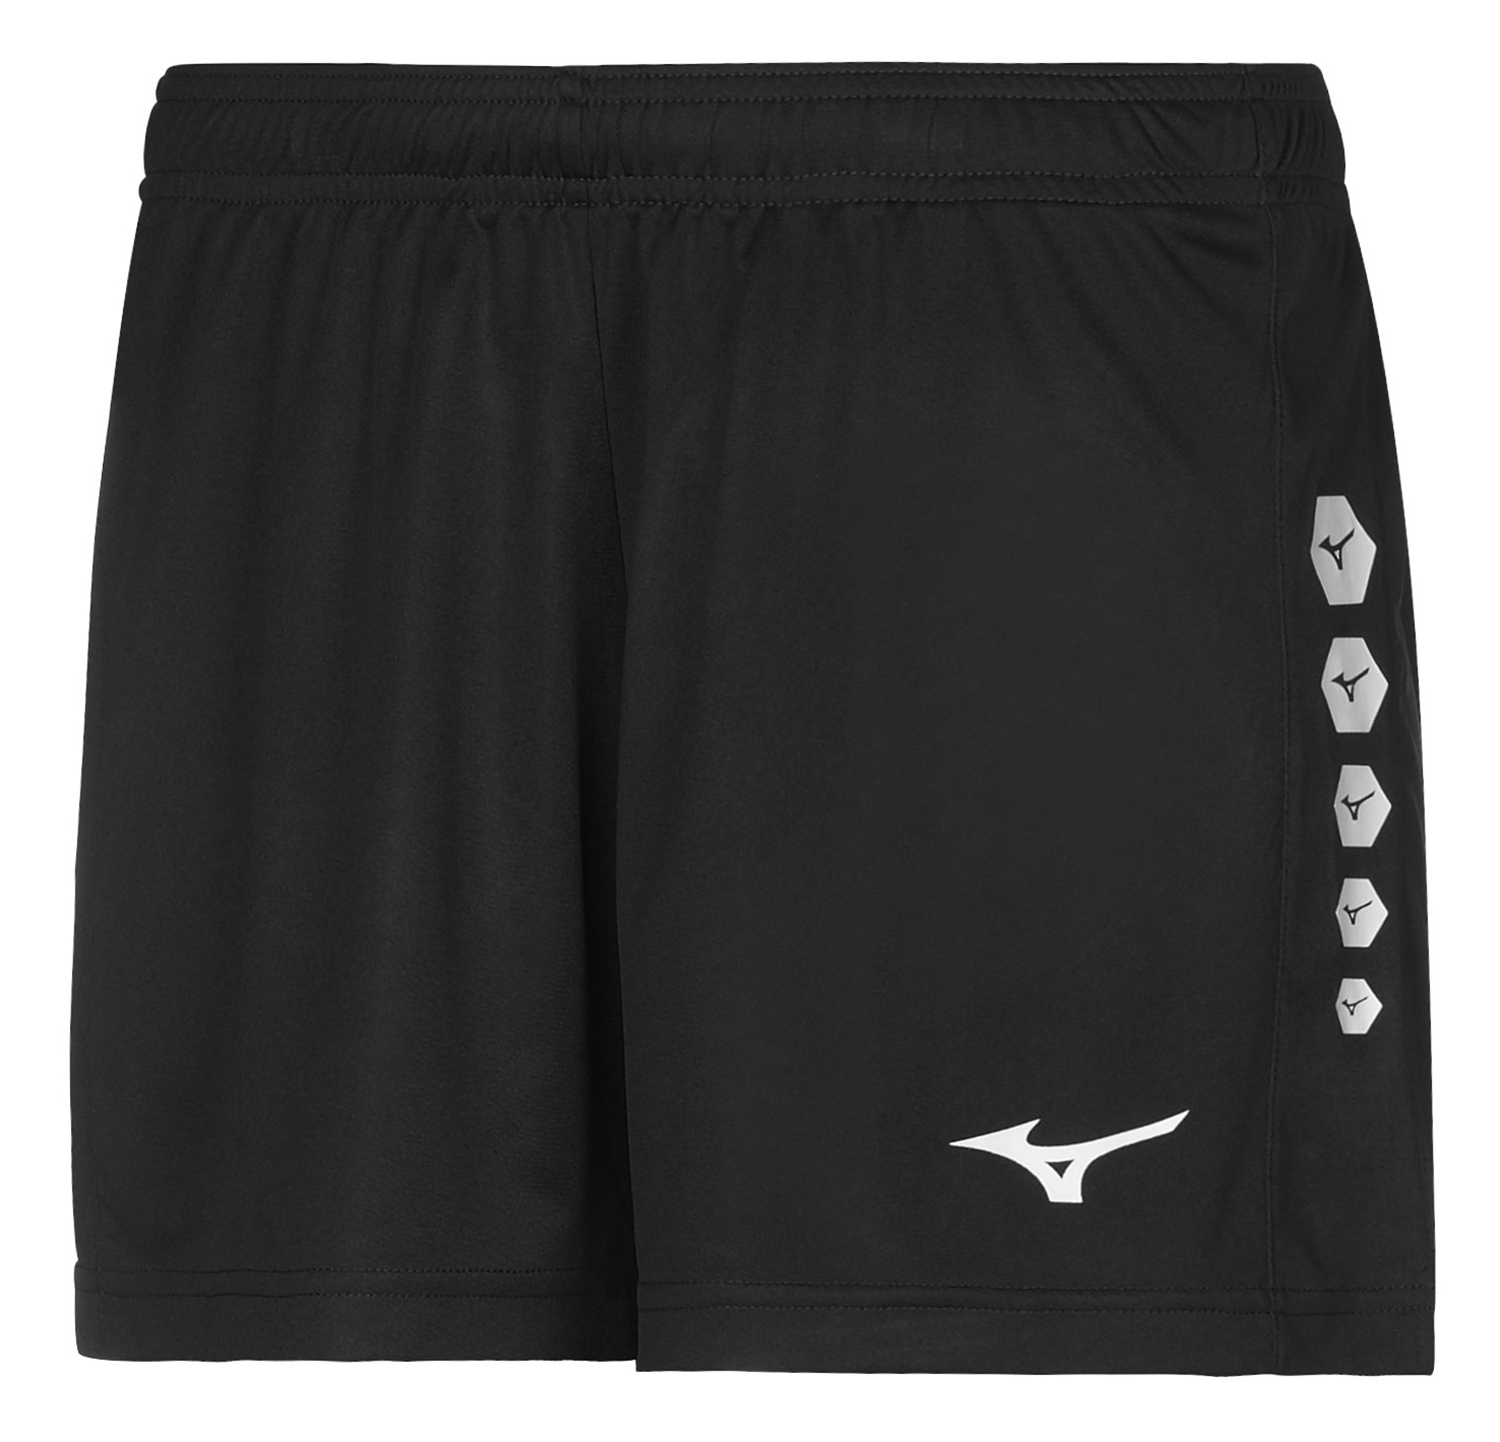 Спортивные шорты женские Mizuno X2EB7700-09 черные L